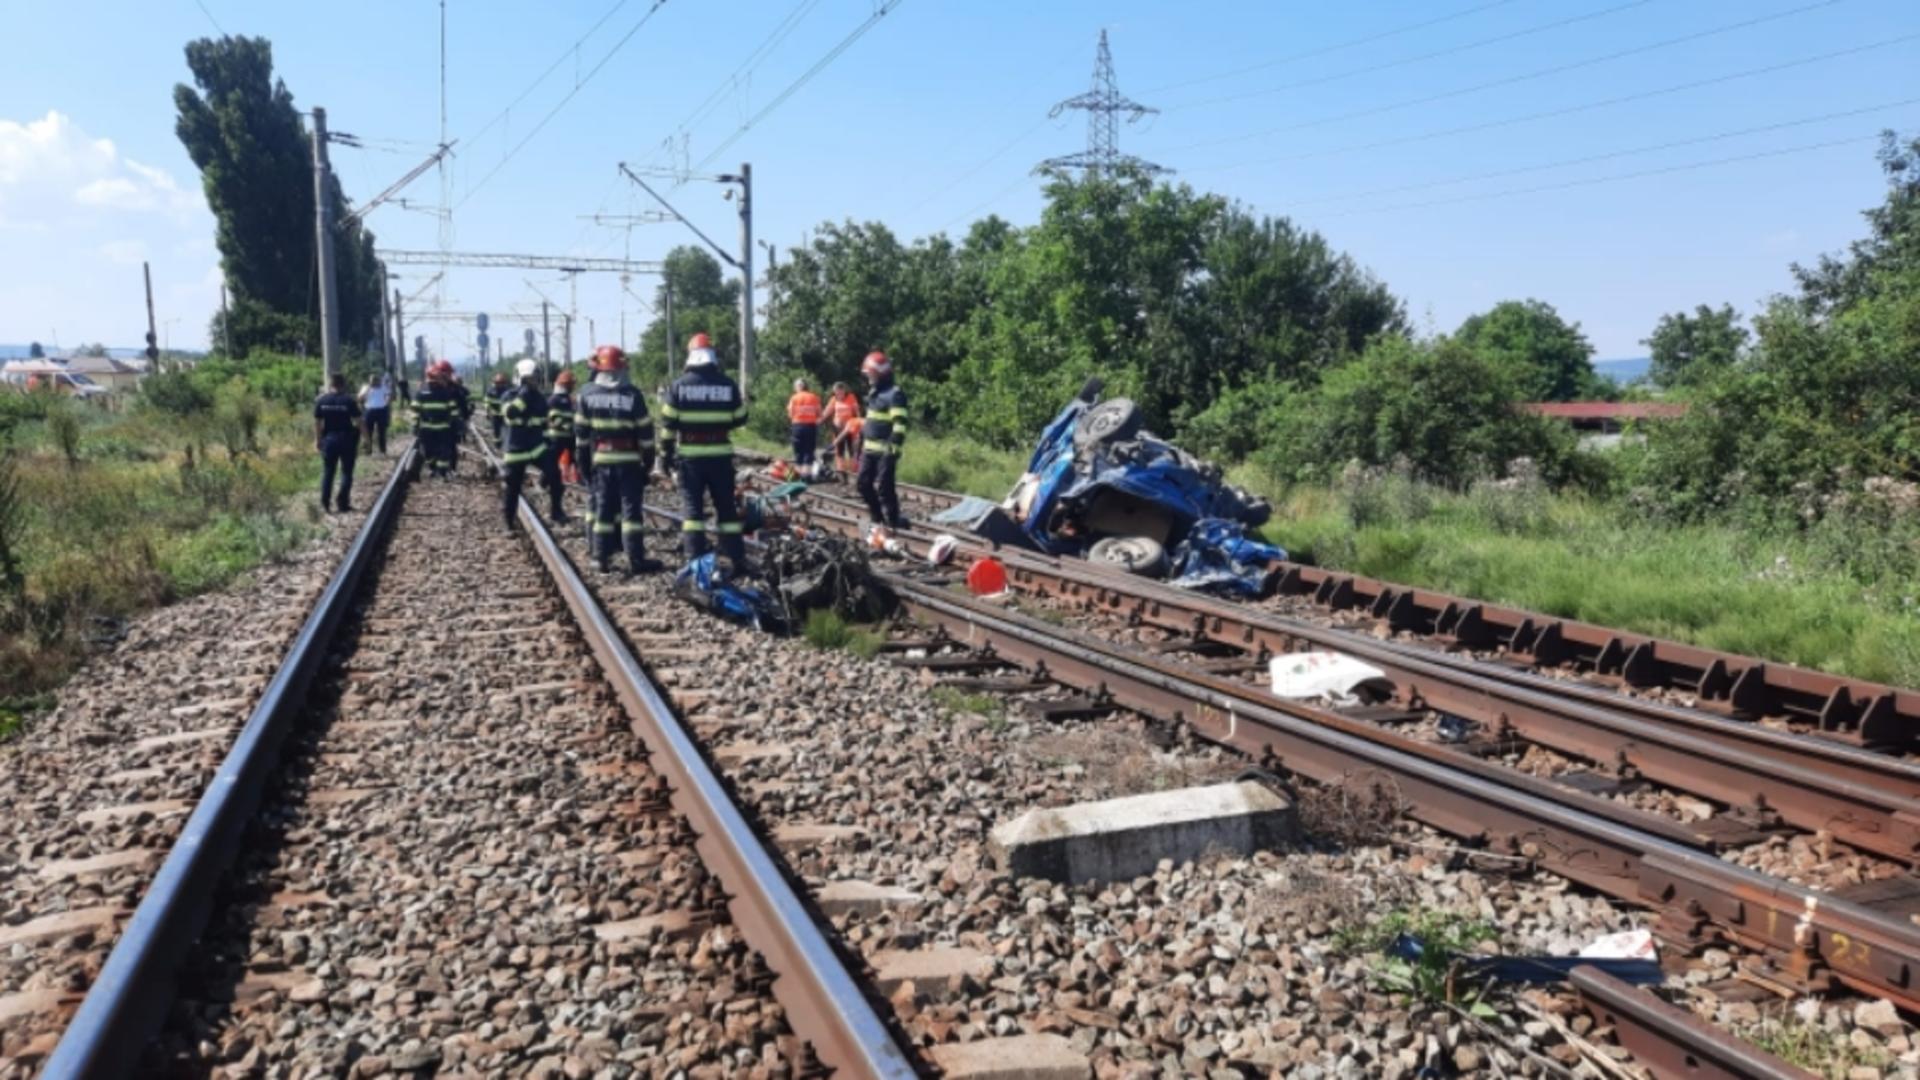 Familia spulberată de tren în Bacău | La volan se afla mama, însărcinată în 4 luni, care abia luase permisul